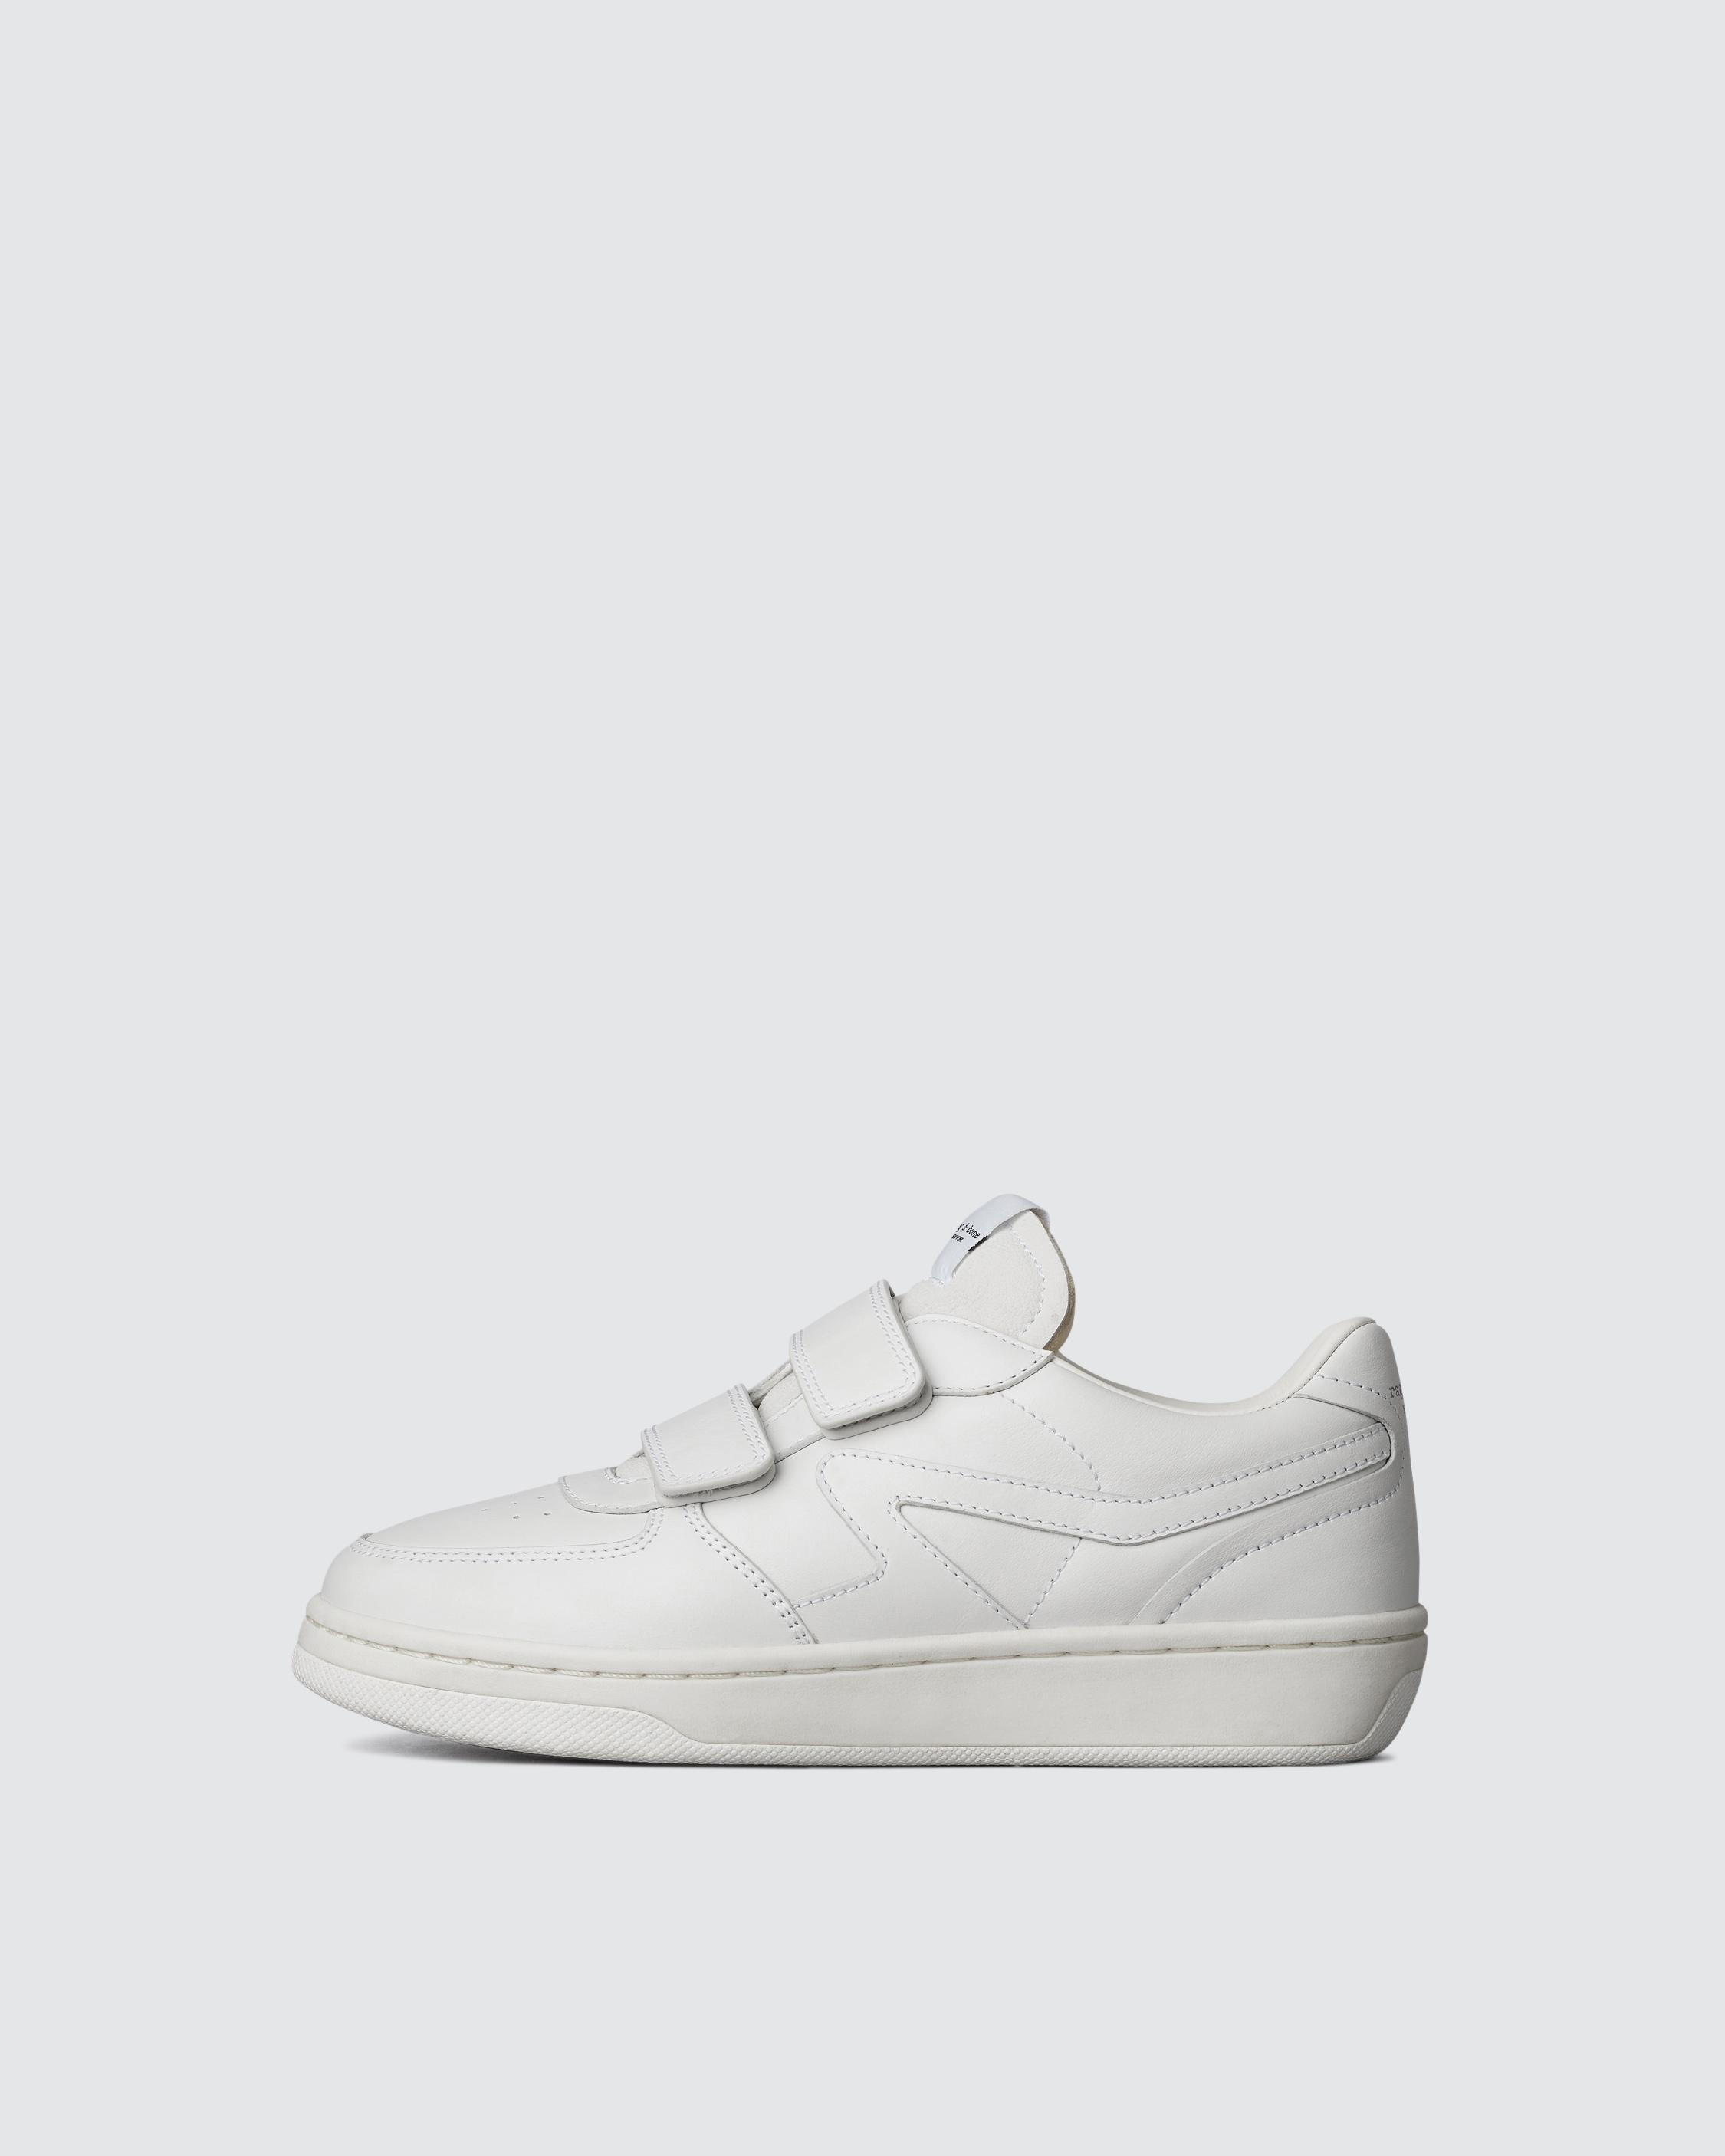 White Retro Court Strap Sneaker: Leather Sneaker